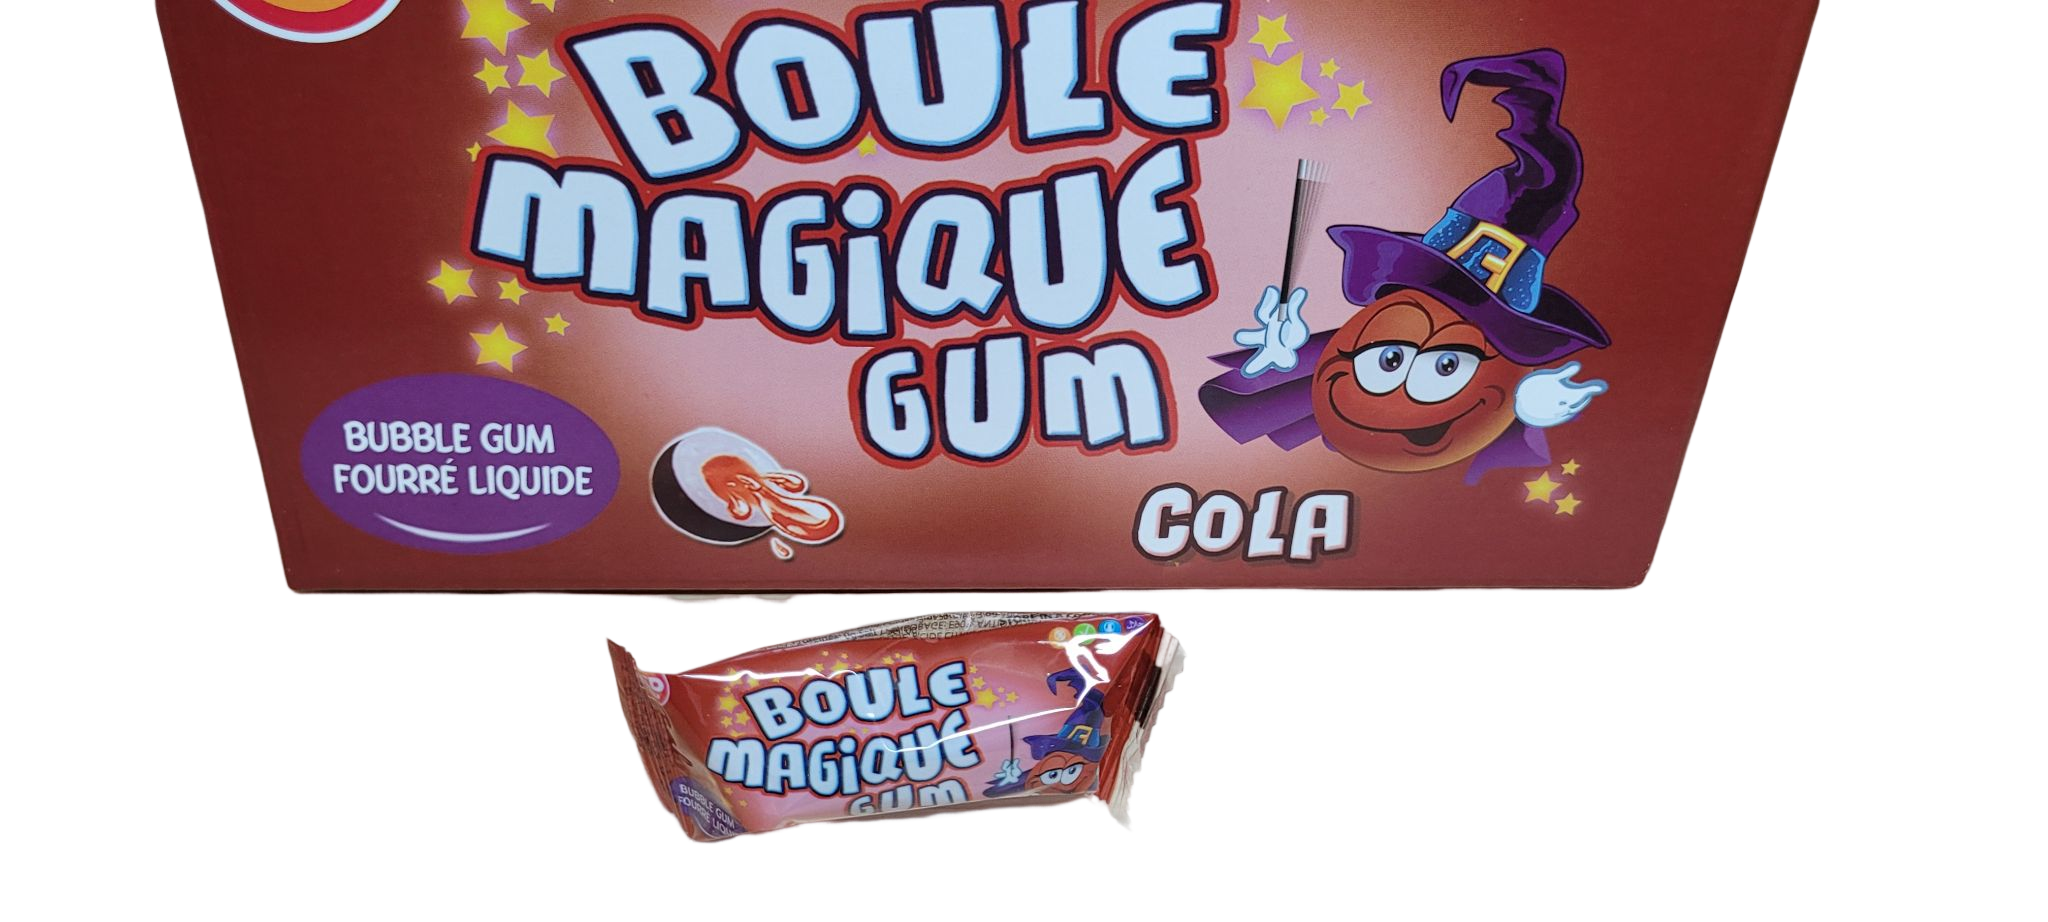 Boule magique gum Cola – Paradis des bonbons